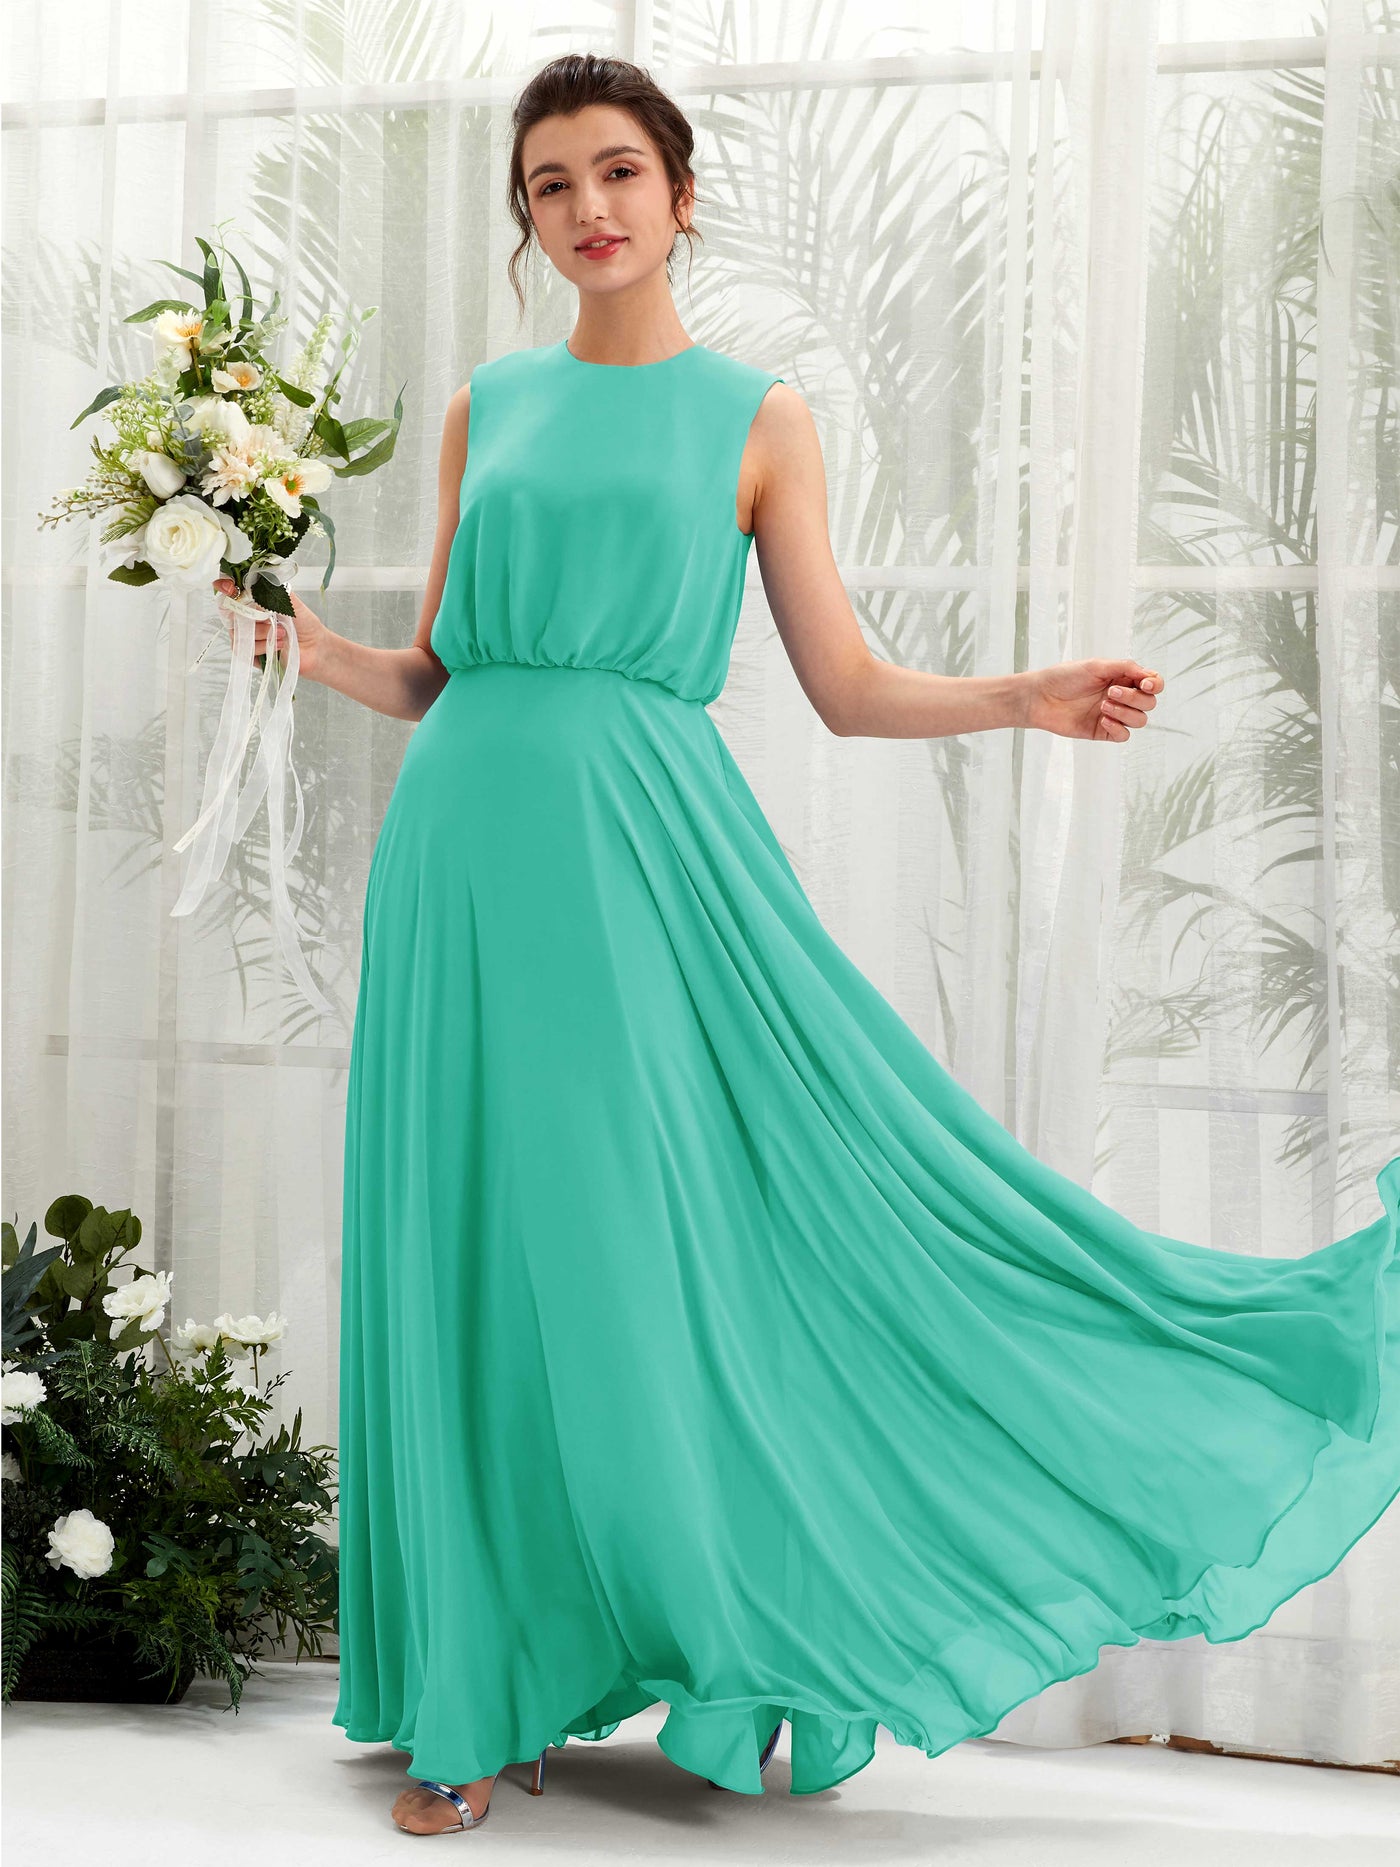 Round Sleeveless Chiffon Bridesmaid Dress - Tiffany (81222832)#color_tiffany